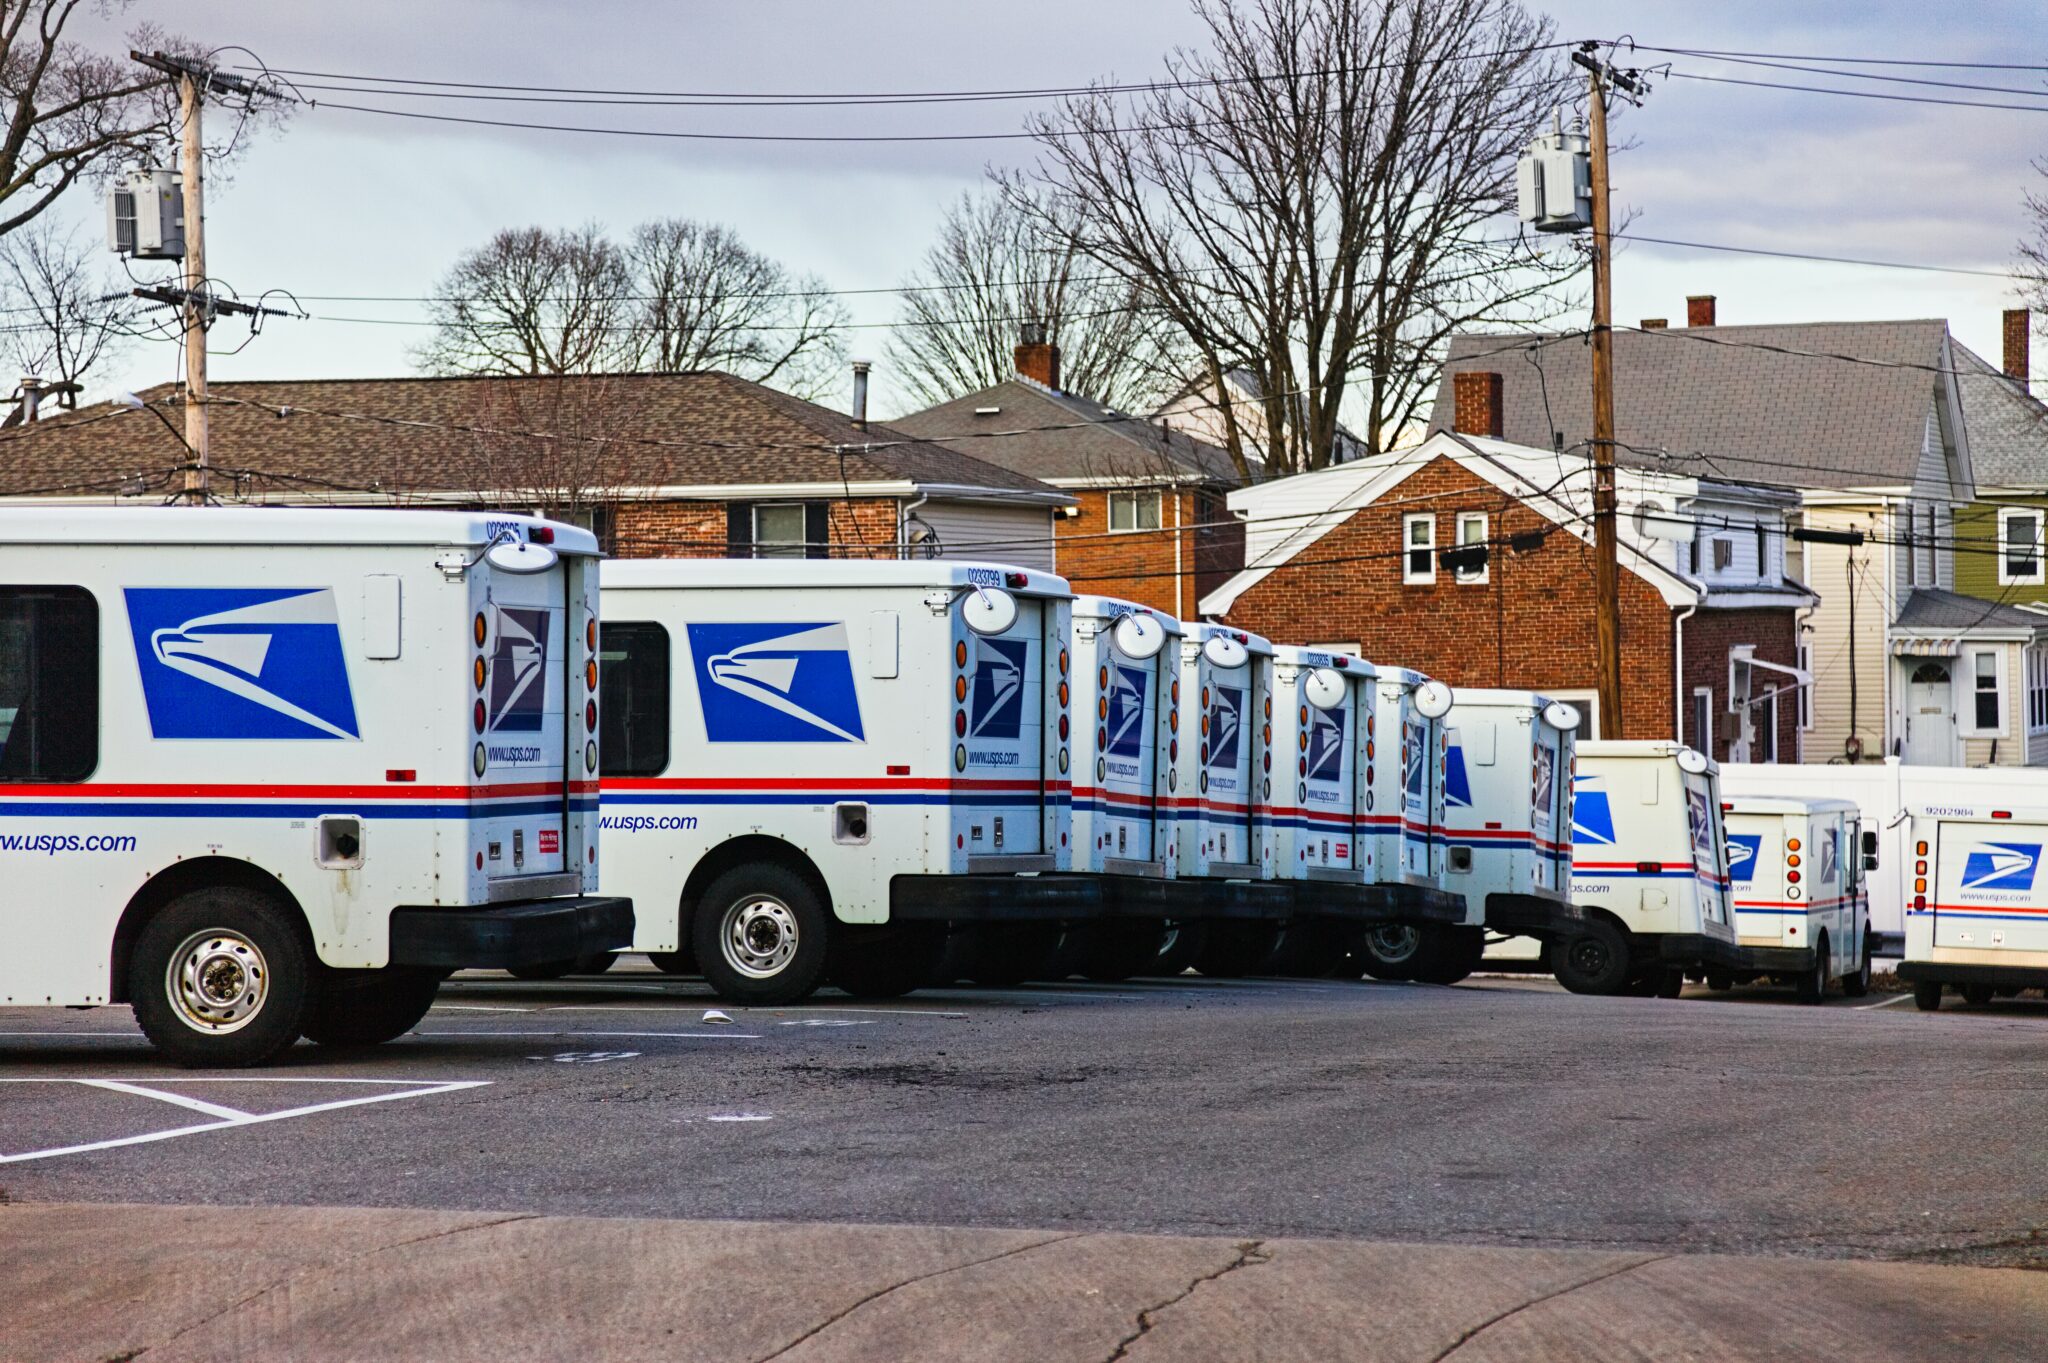 us postal service vans lined up, parked